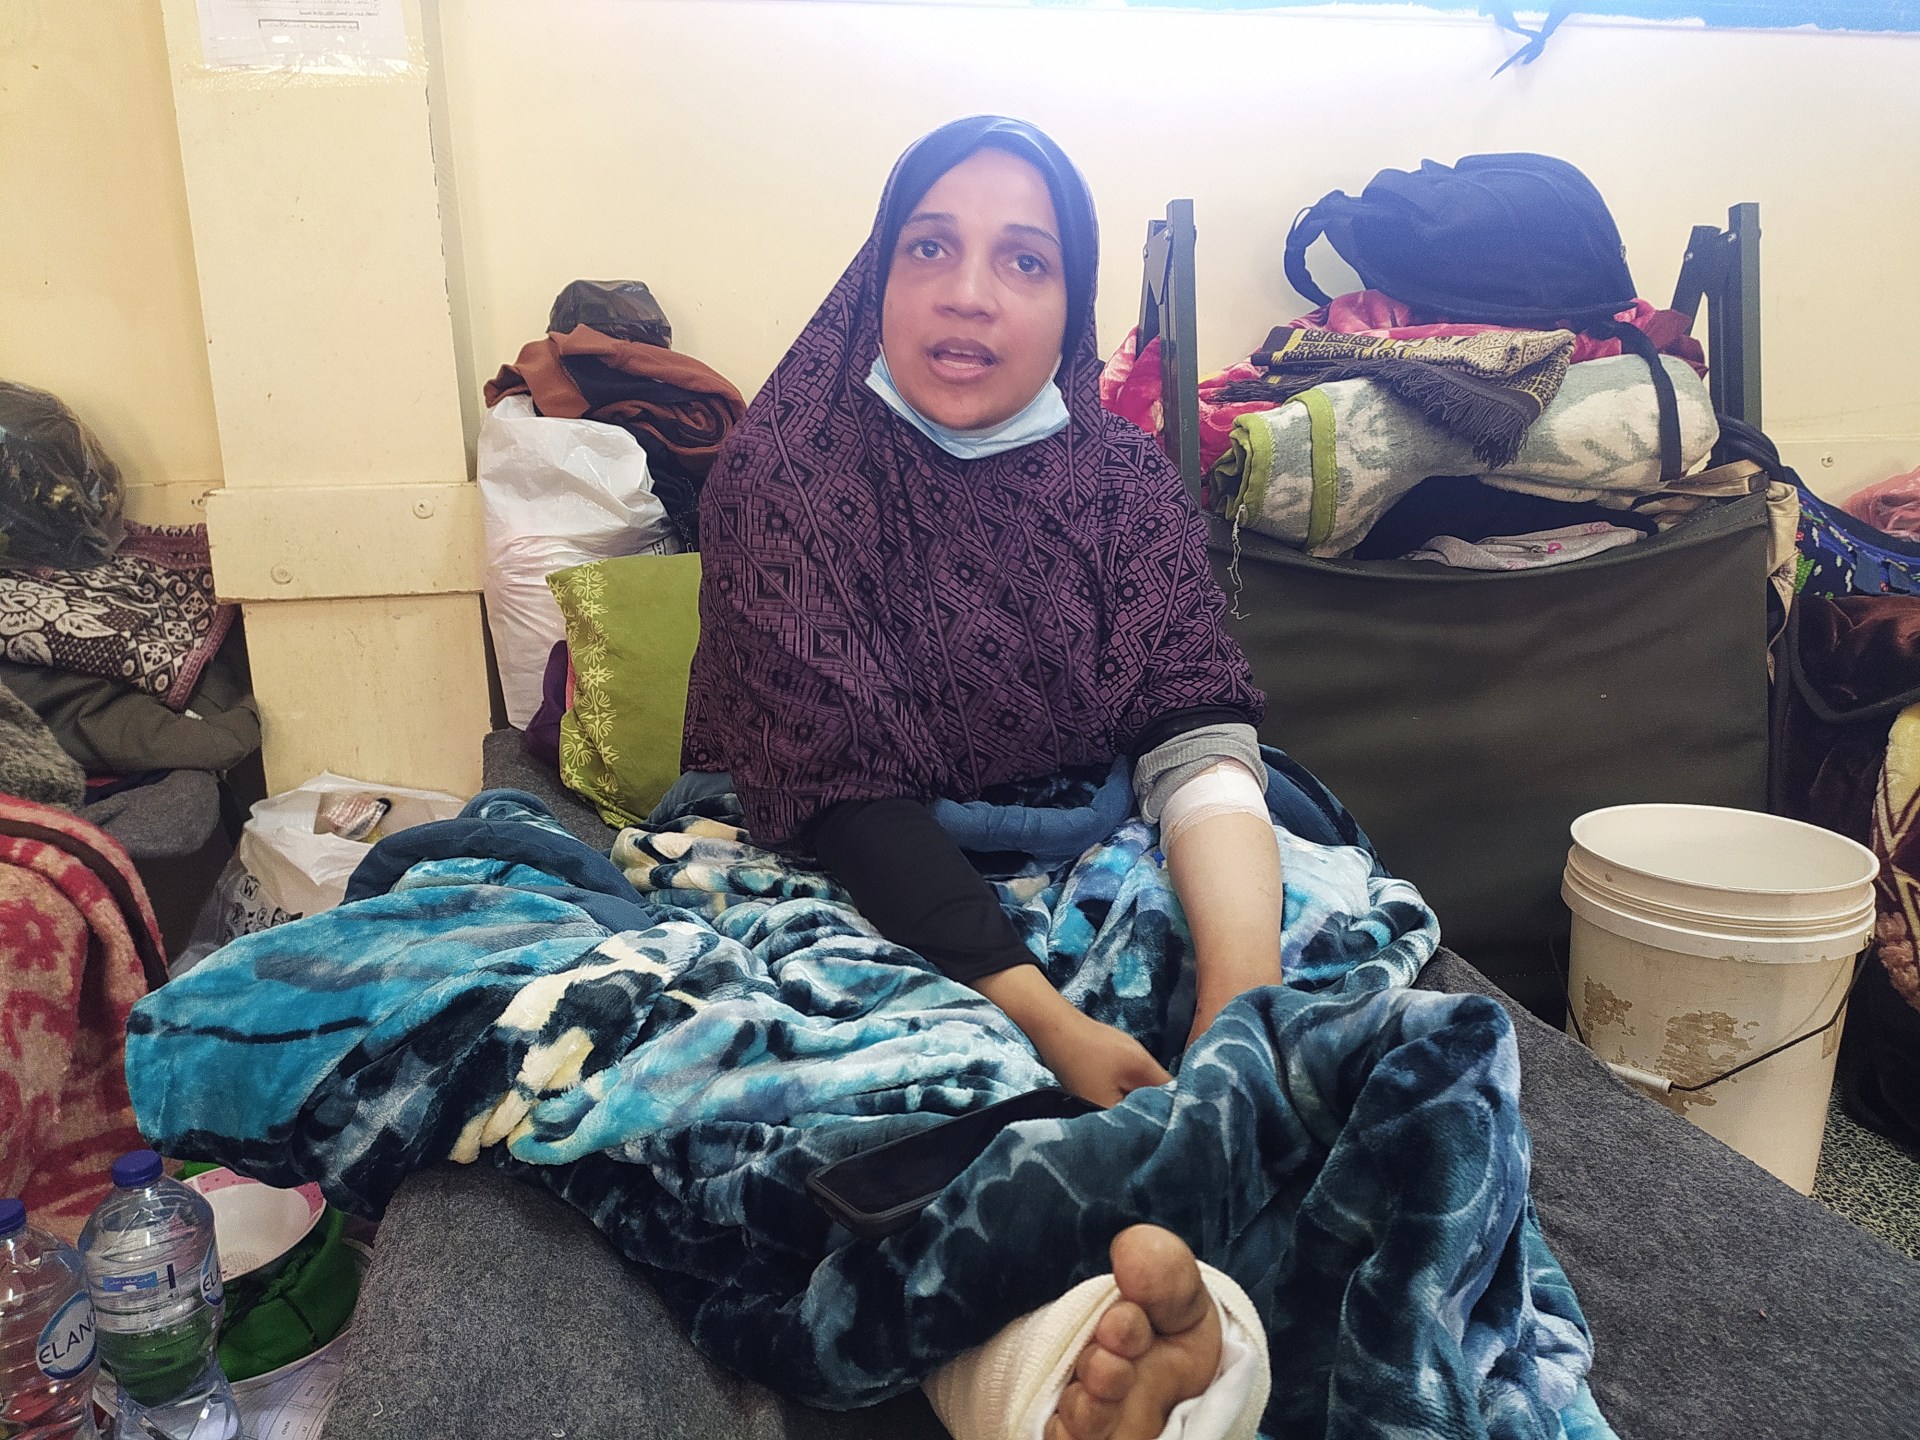 فقدت وحيدها وأسرتها.. ولاء مسعود قصة تختزل آلام أمهات غزة | سياسة – البوكس نيوز